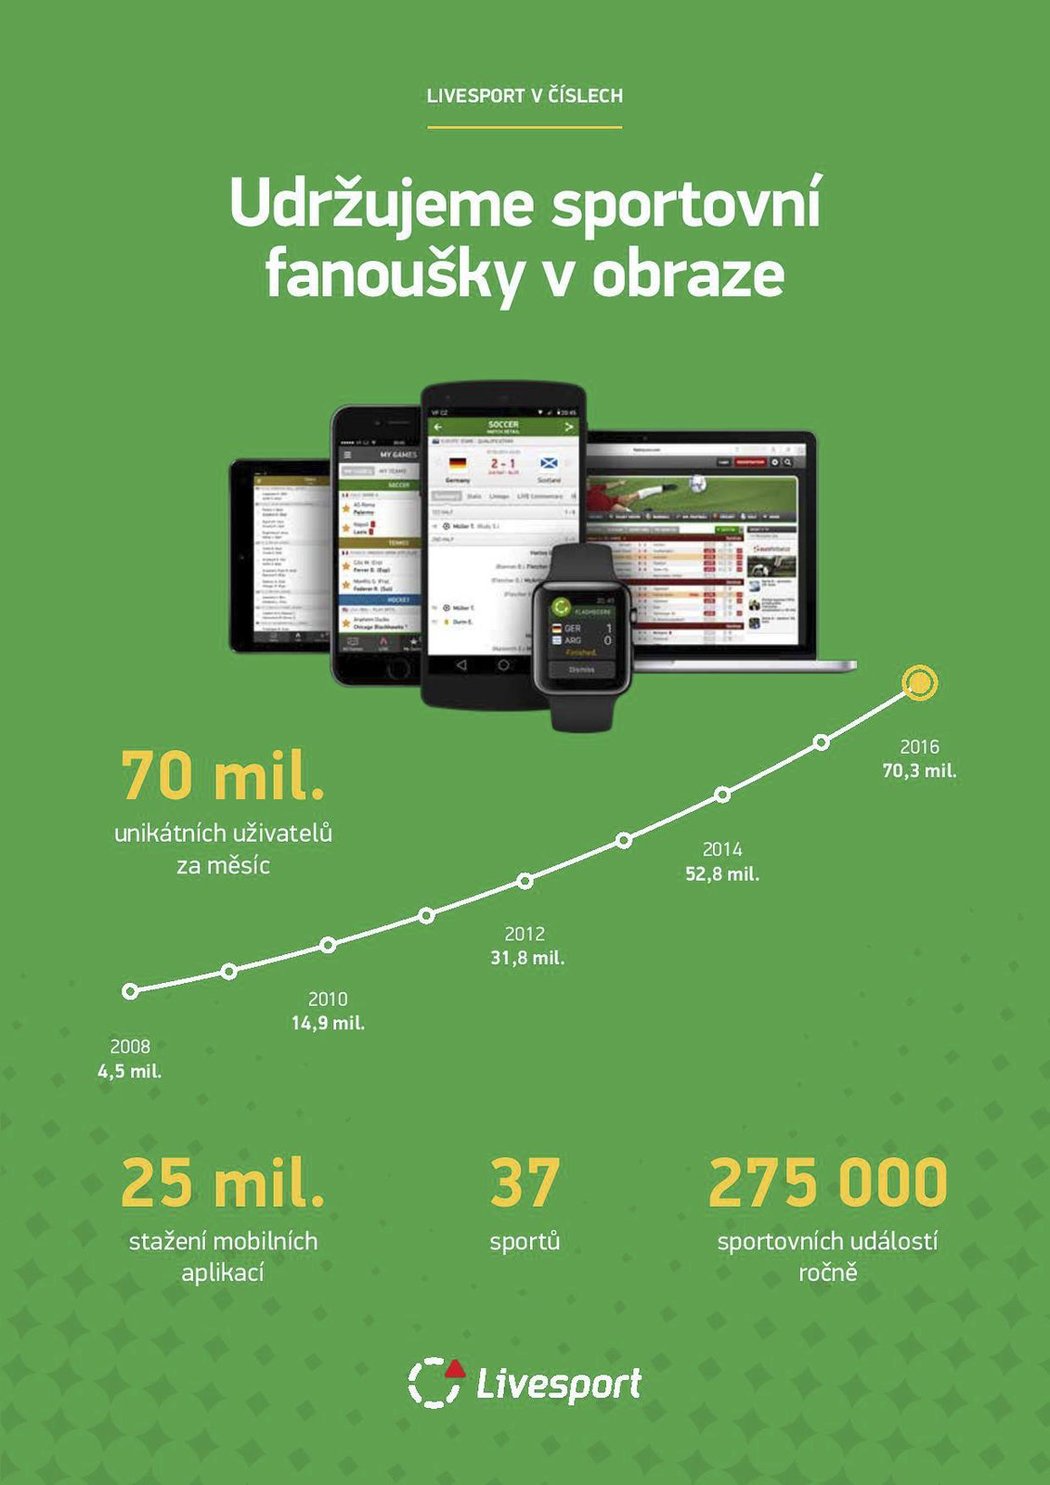 Mobilní aplikaci Livesport.cz měla v roce 2016 celkem 25 milionů stažení